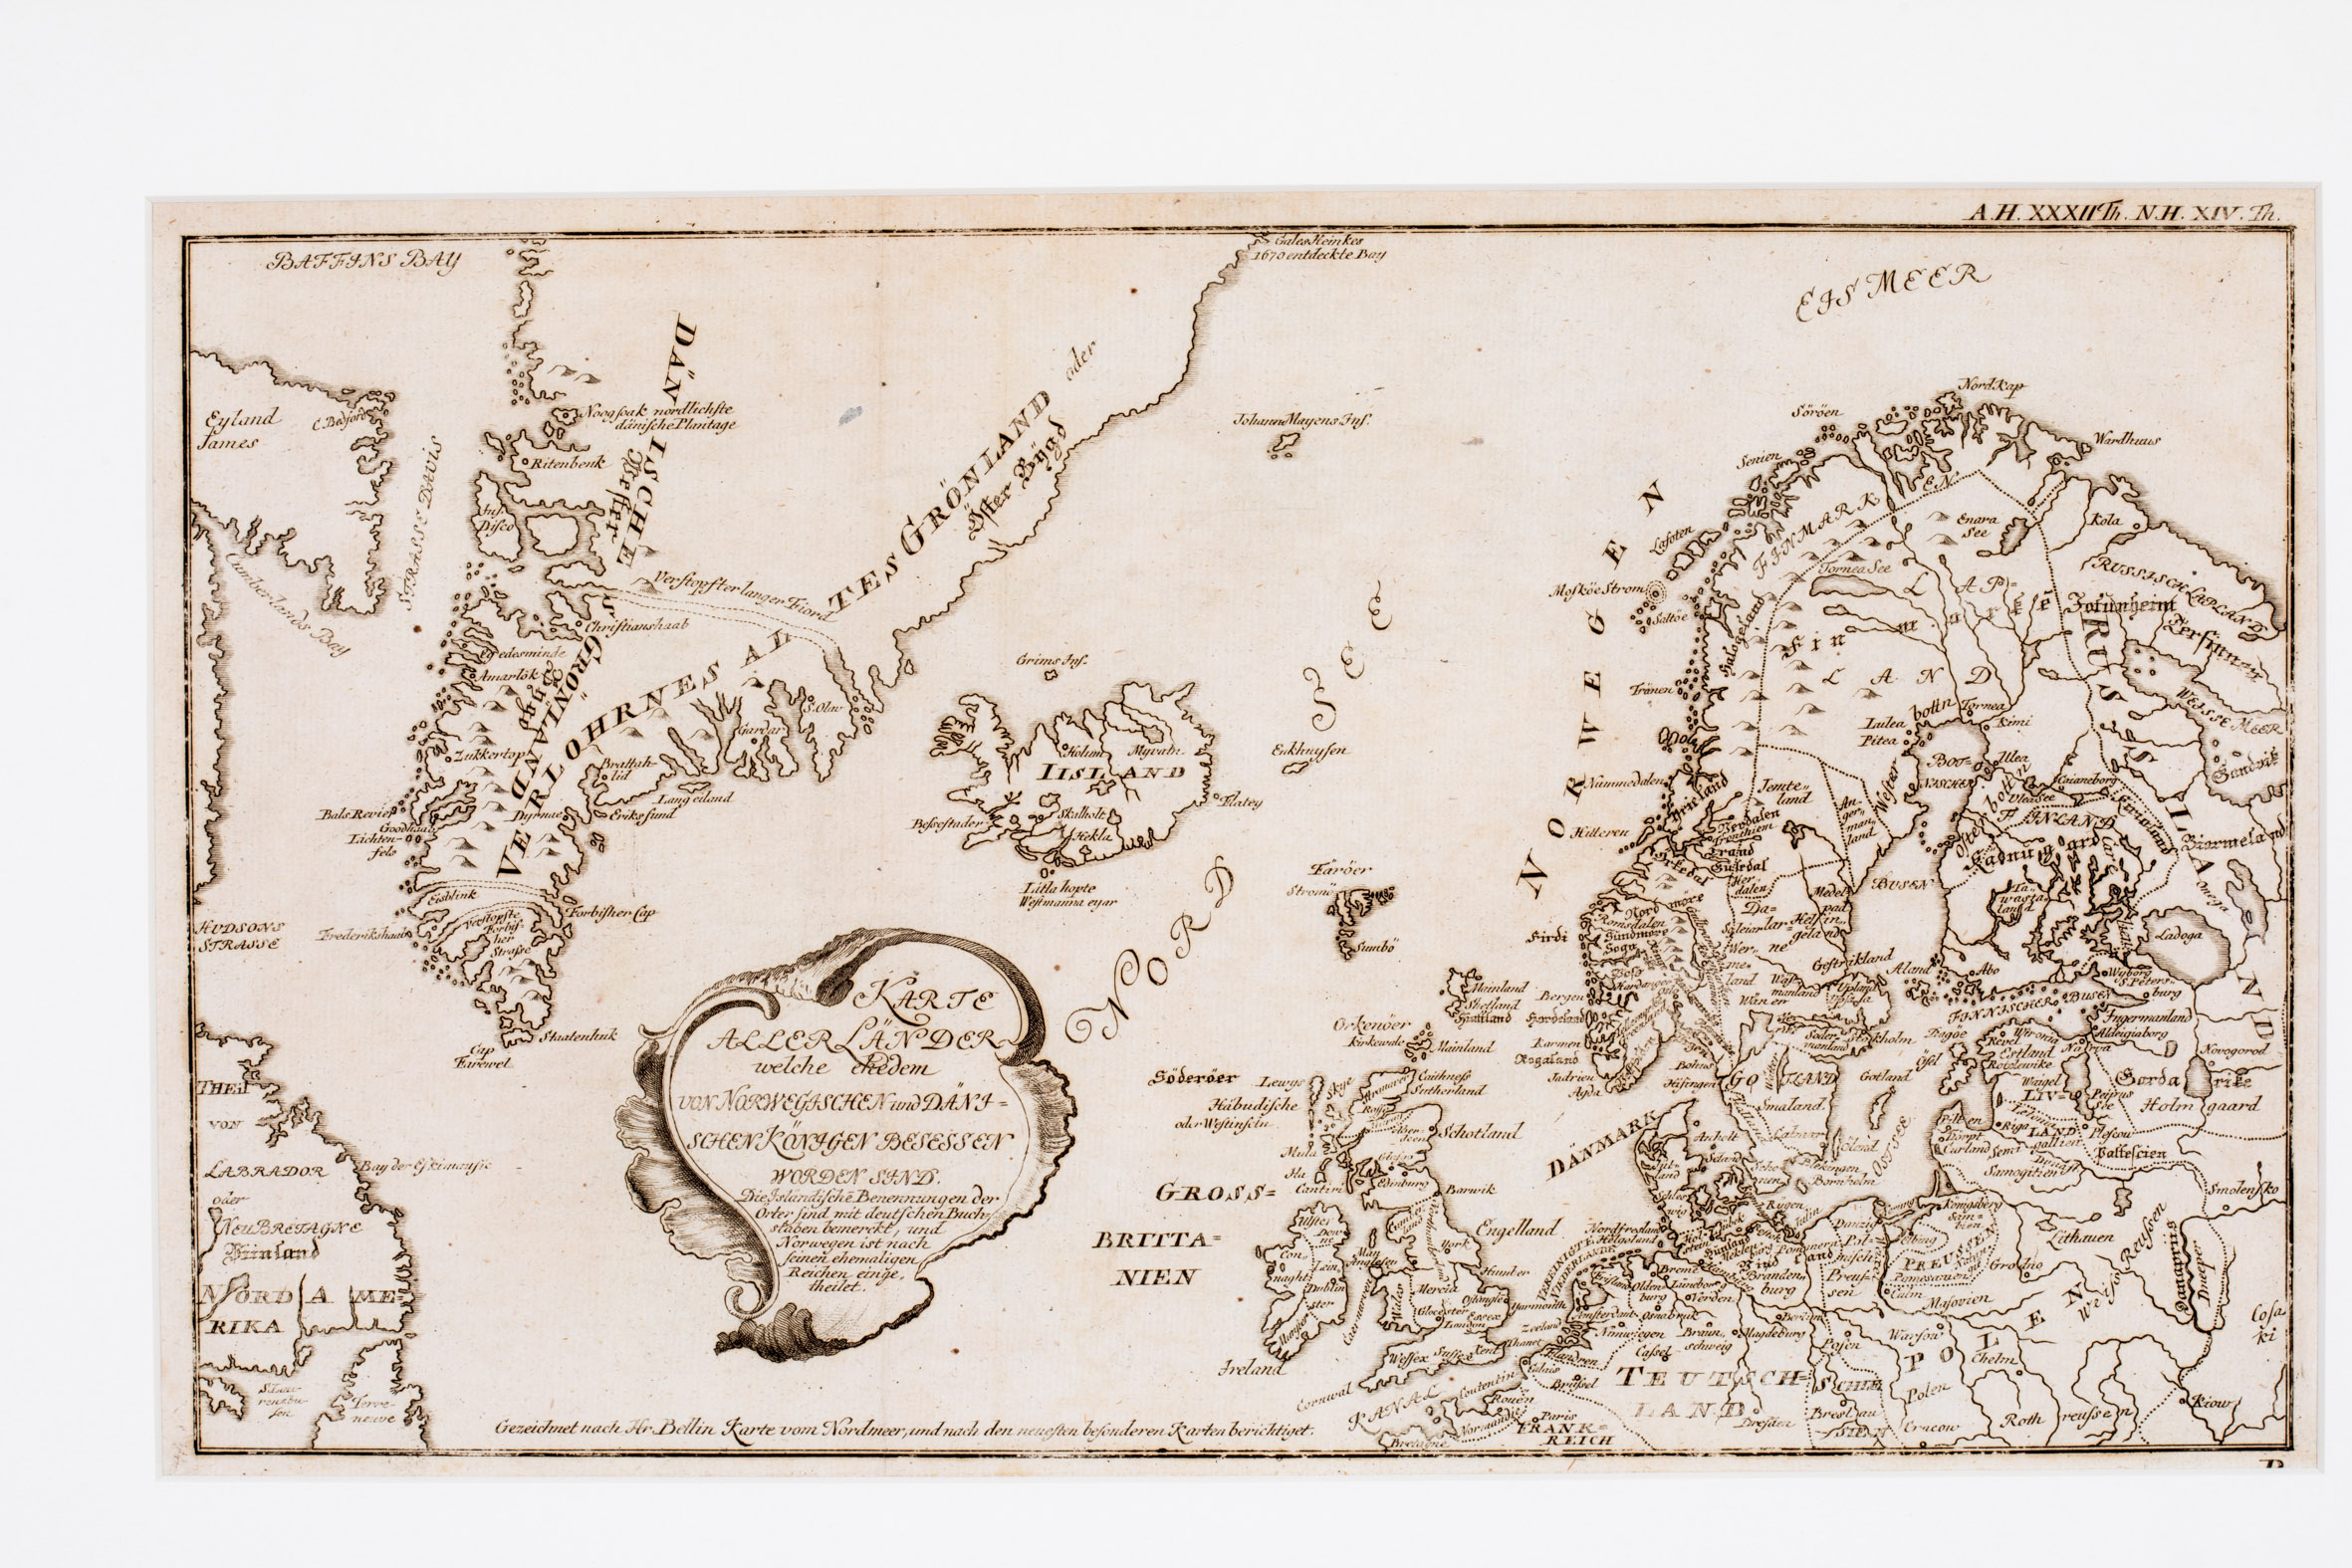 148. Karte aller Länder welche ehedem von Norwegaschen und Dänischen Königen besessen worden sind